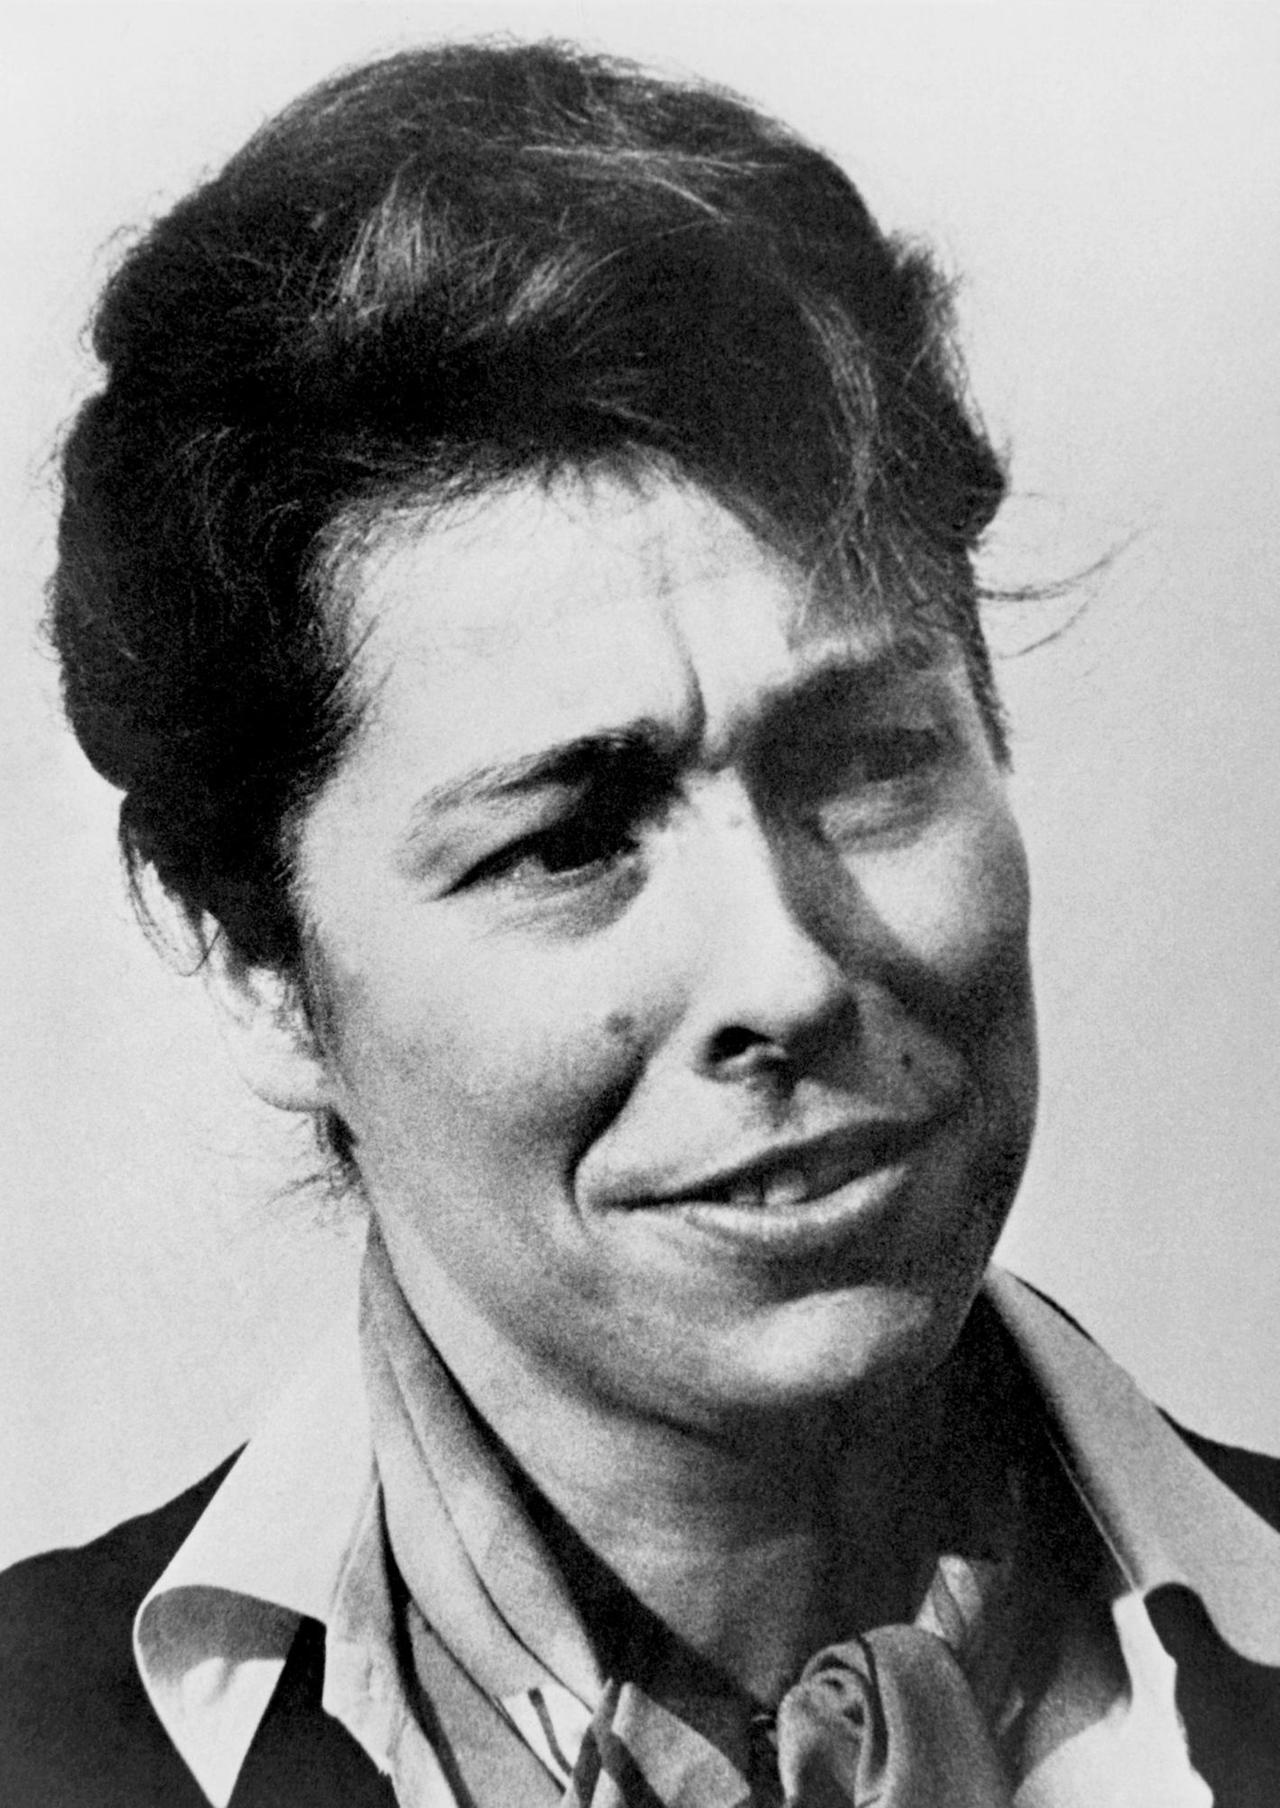 Die Politikwissenschaftlerin Gesine Schwan, aufgenommen am 1. Oktober 1984 in Berlin